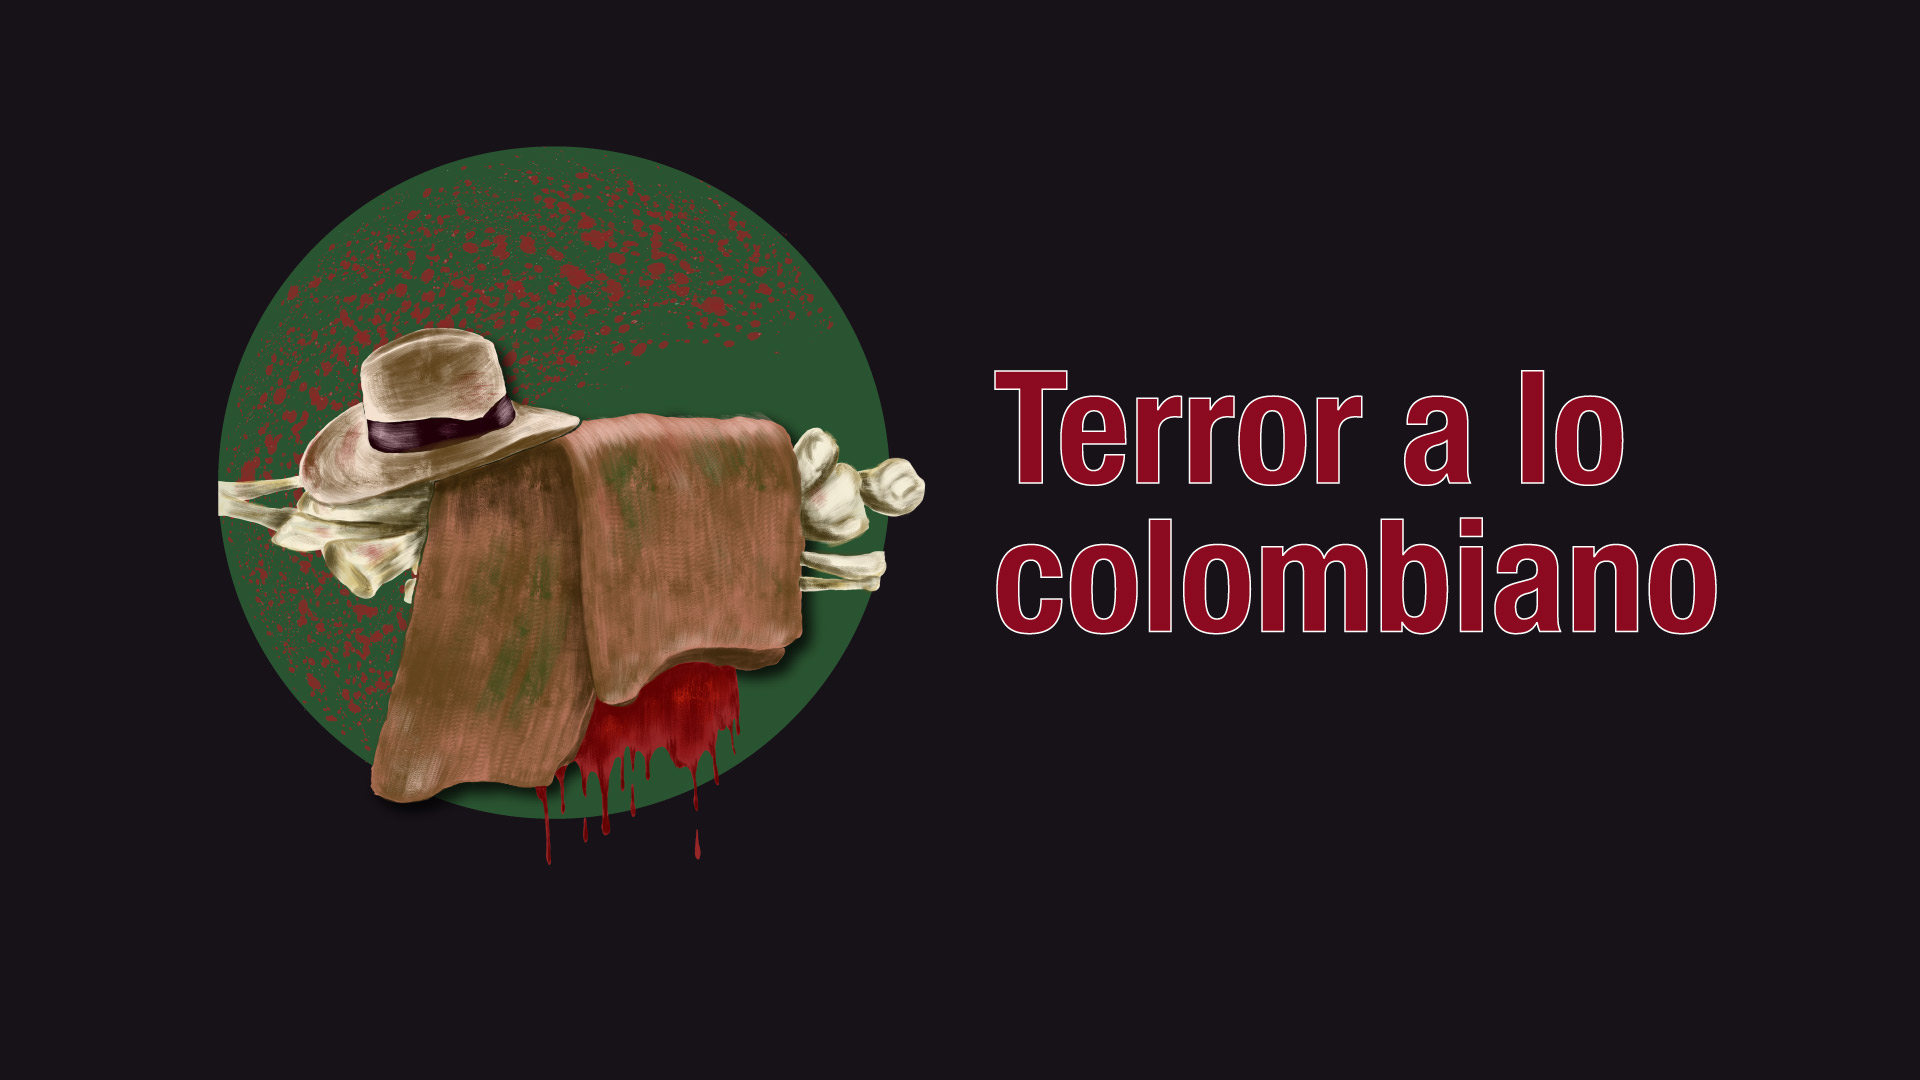 El próximo 31 de octubre se realizará la exposición Terror a lo colombiano en el Instituto de Bellas Artes